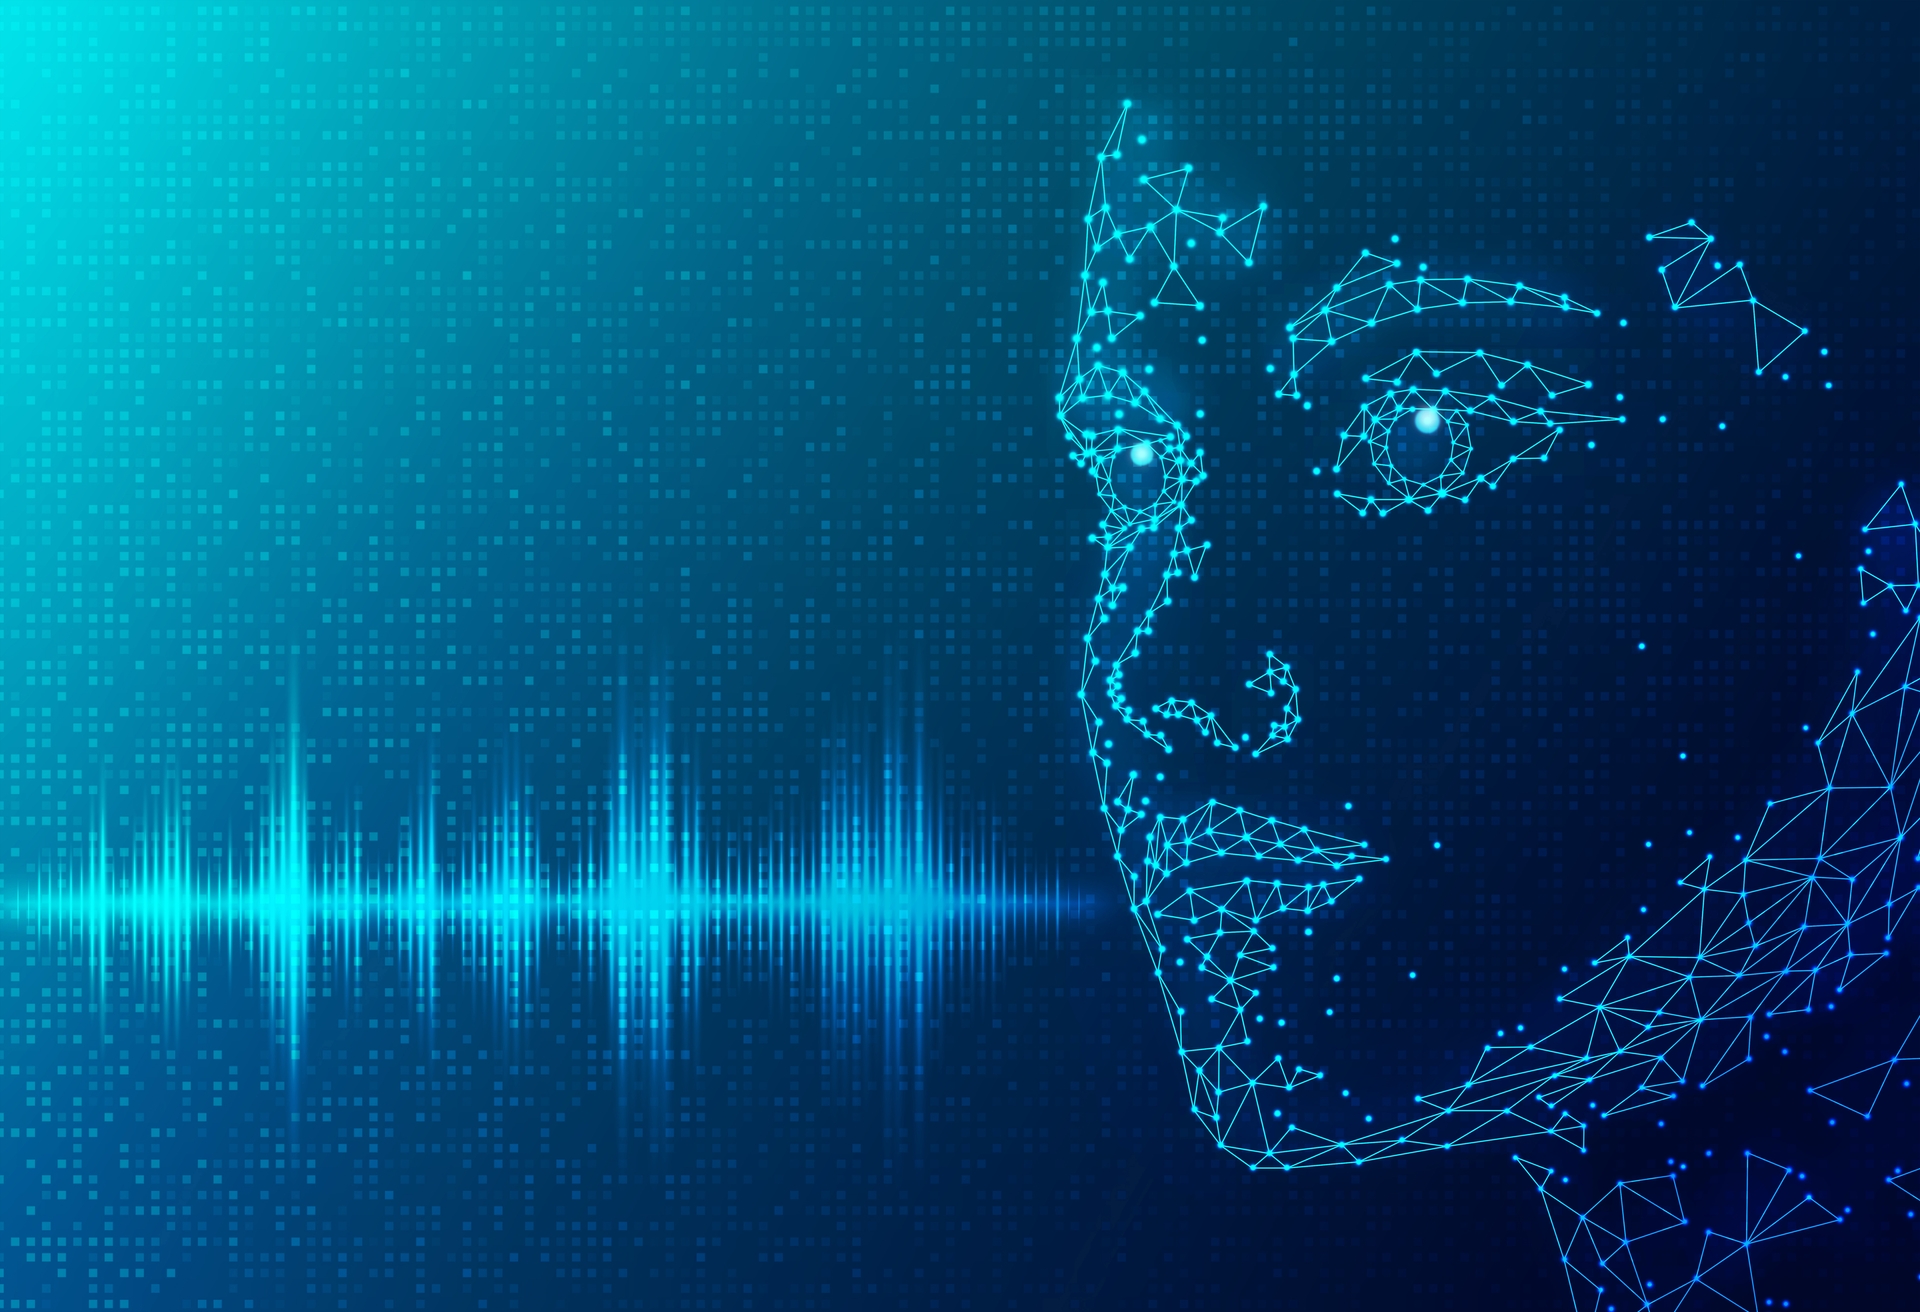 Cette nouvelle IA de génération de voix dépasse tout ce que vous avez déjà entendu... et pose déjà des problèmes